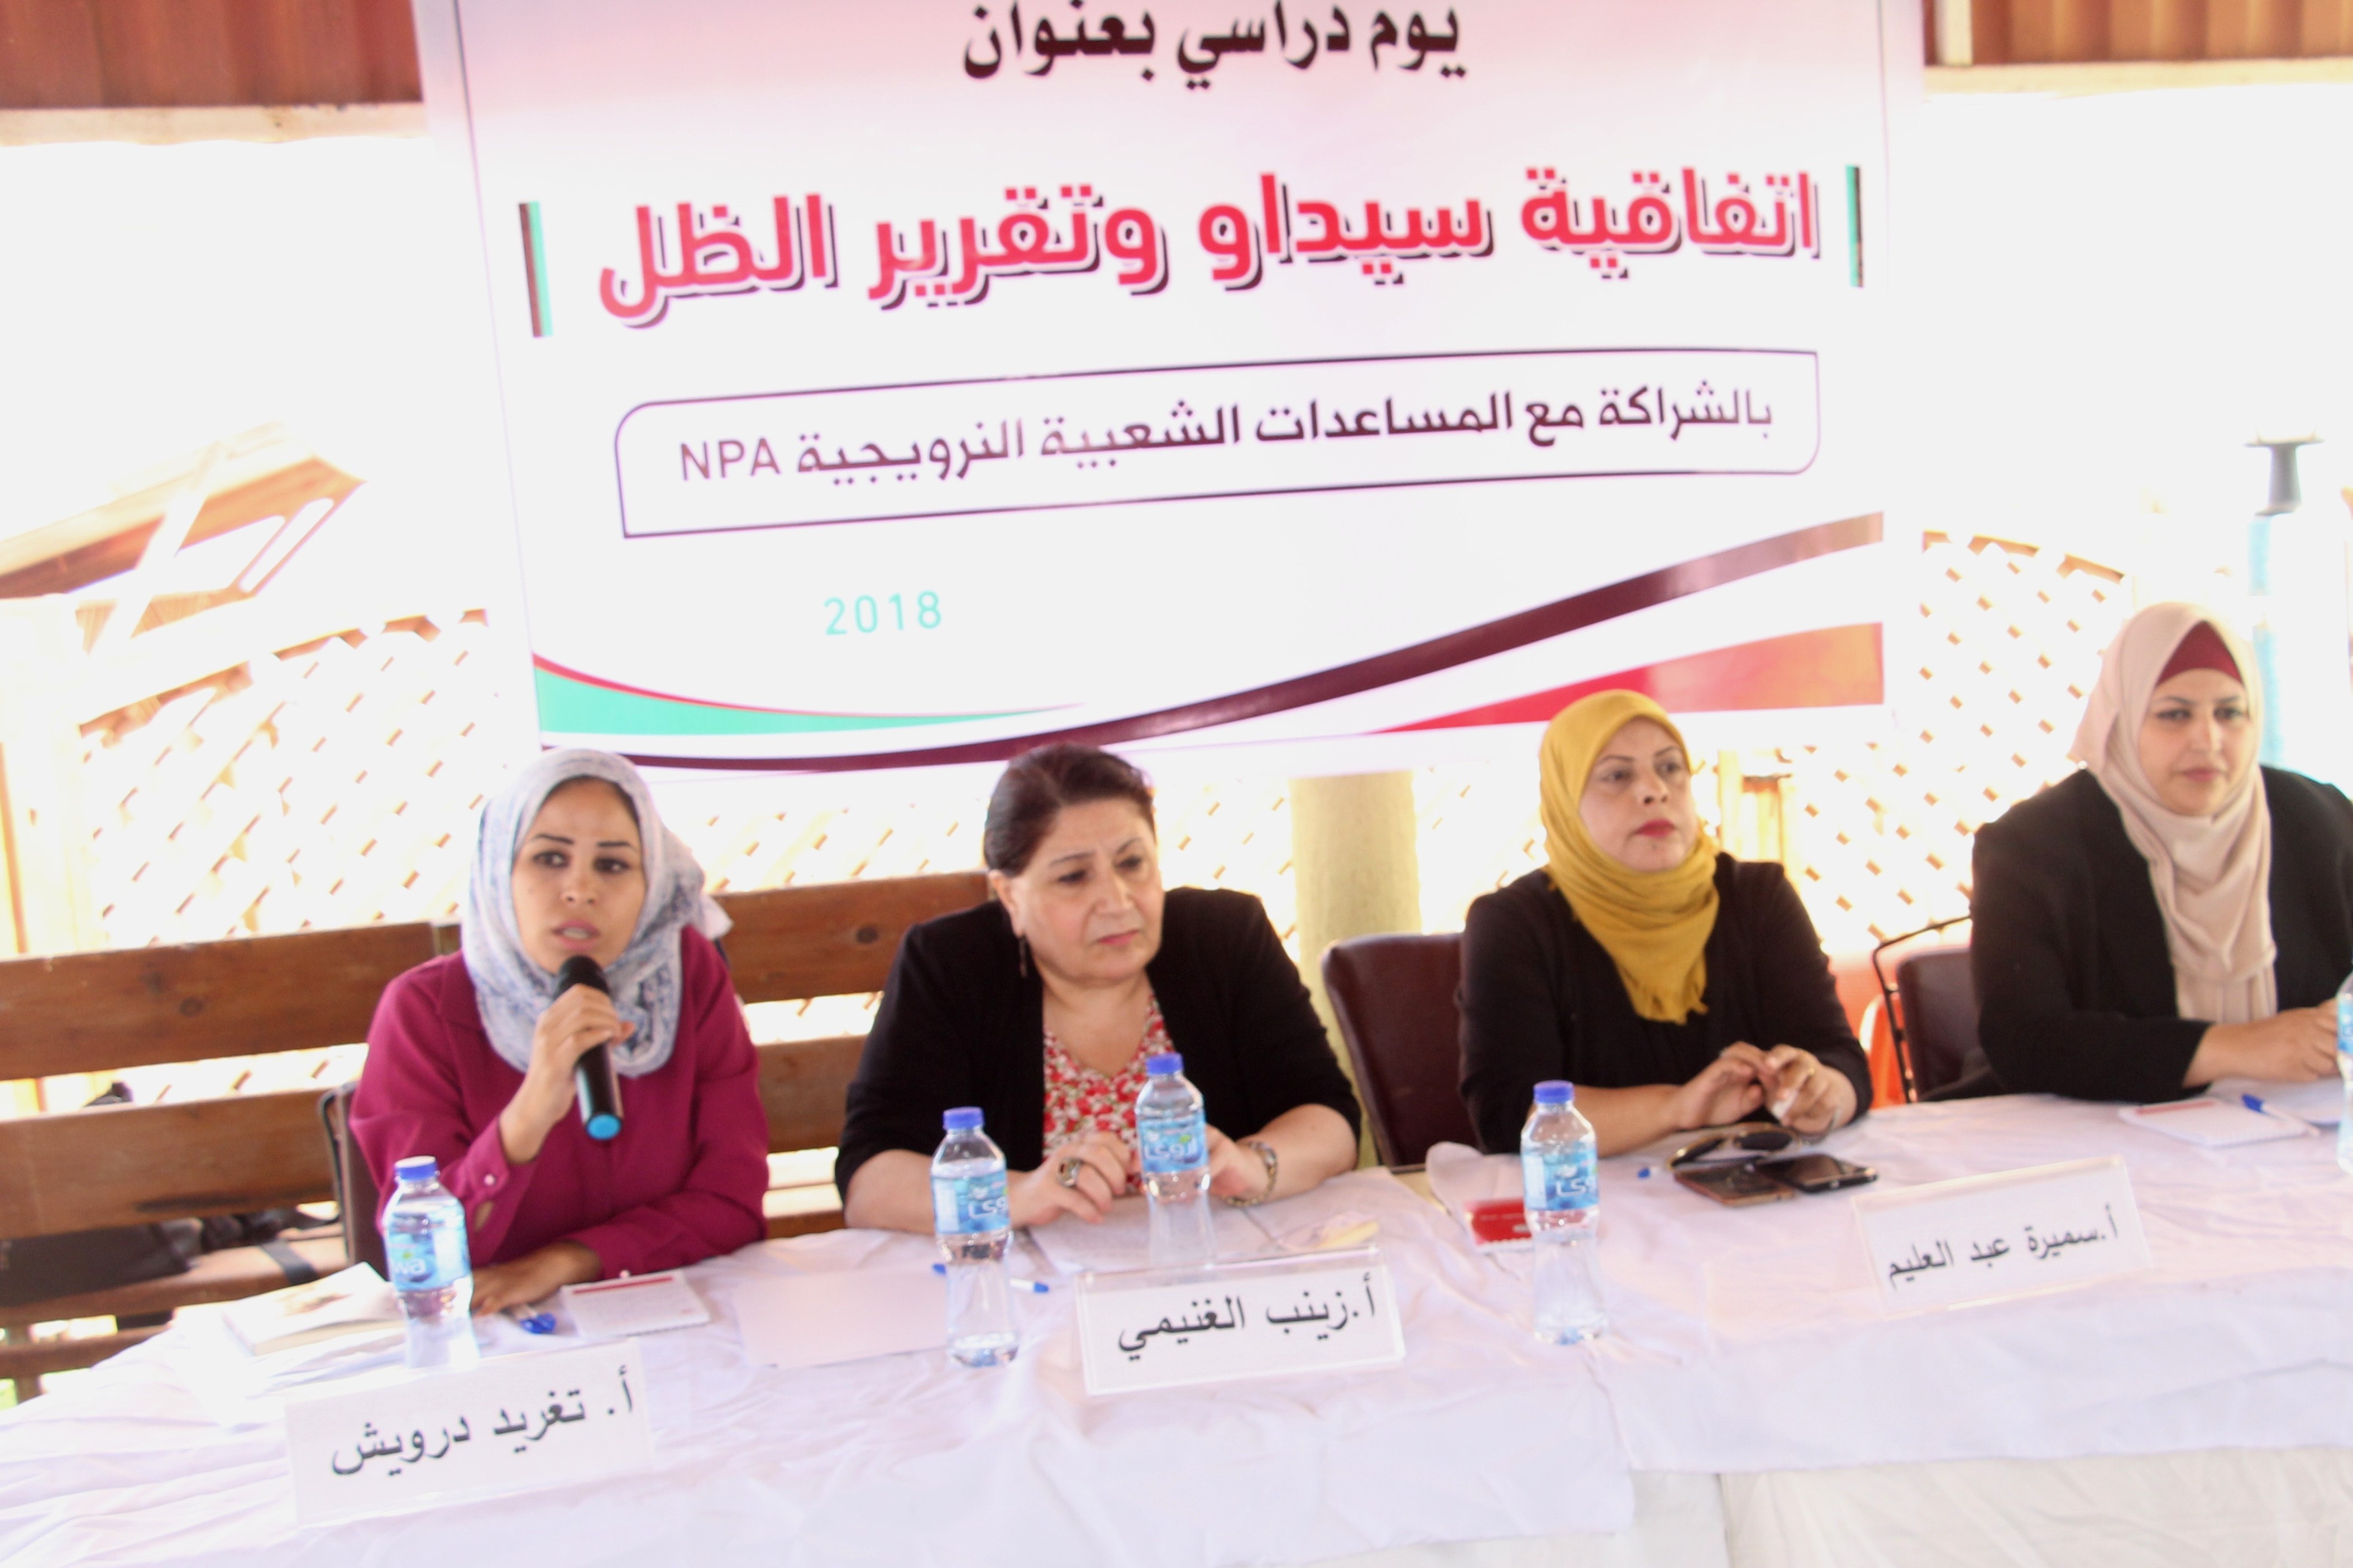 رفح: اتحاد لجان المرأة الفلسطينية تنفذ يوما دراسيا بعنوان ” اتفاقية سيداو وتقرير الظل”